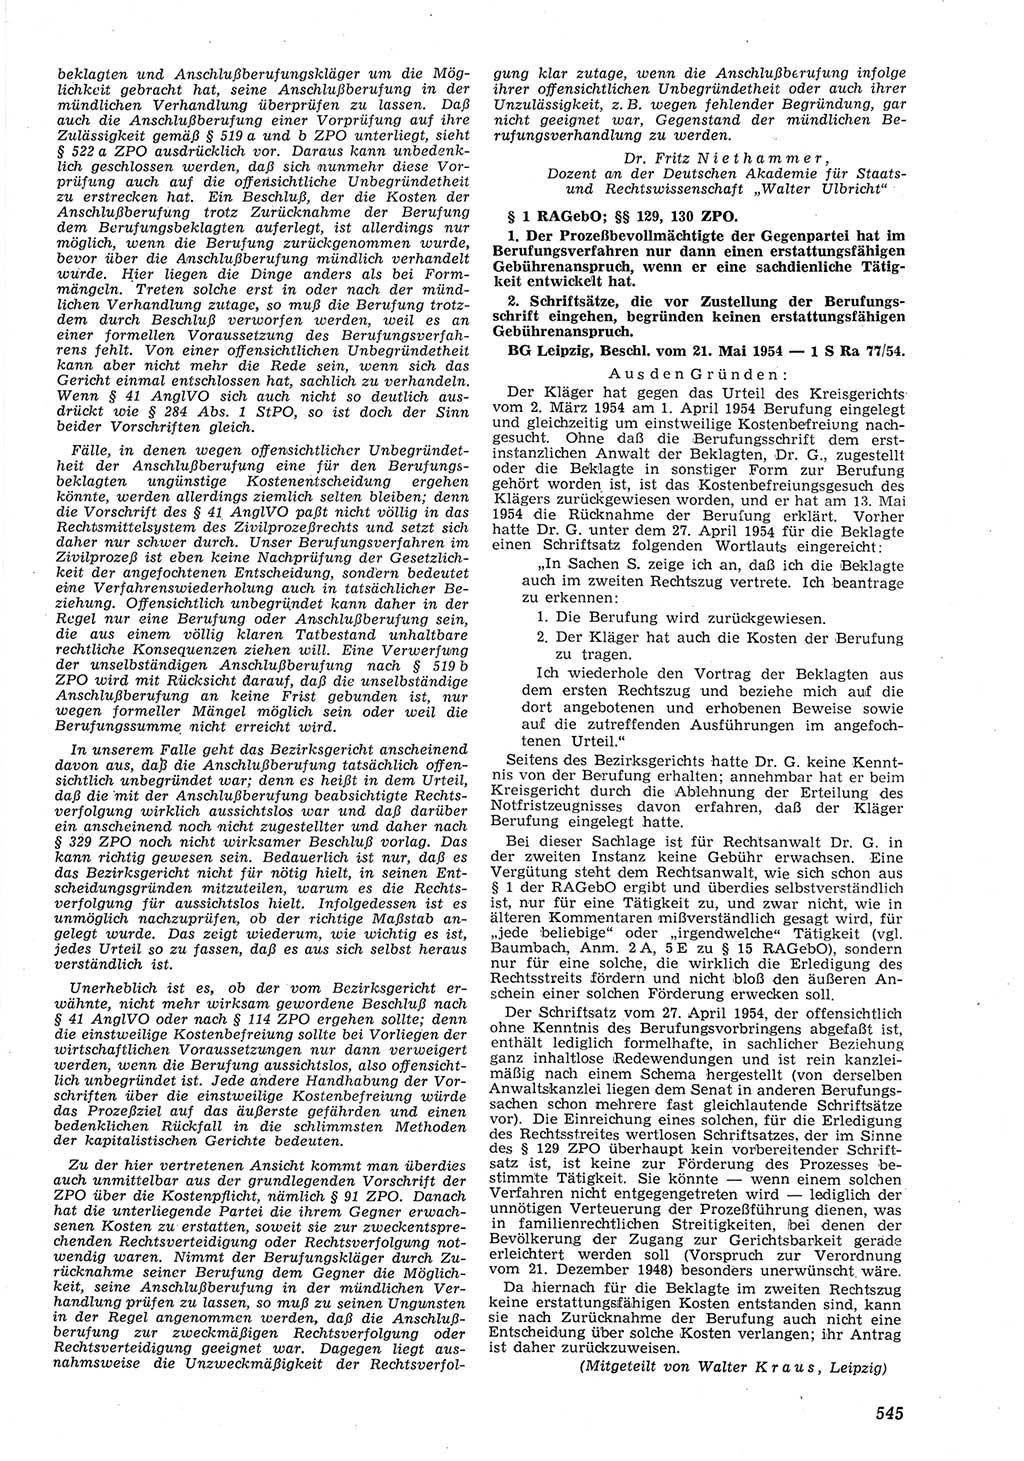 Neue Justiz (NJ), Zeitschrift für Recht und Rechtswissenschaft [Deutsche Demokratische Republik (DDR)], 8. Jahrgang 1954, Seite 545 (NJ DDR 1954, S. 545)